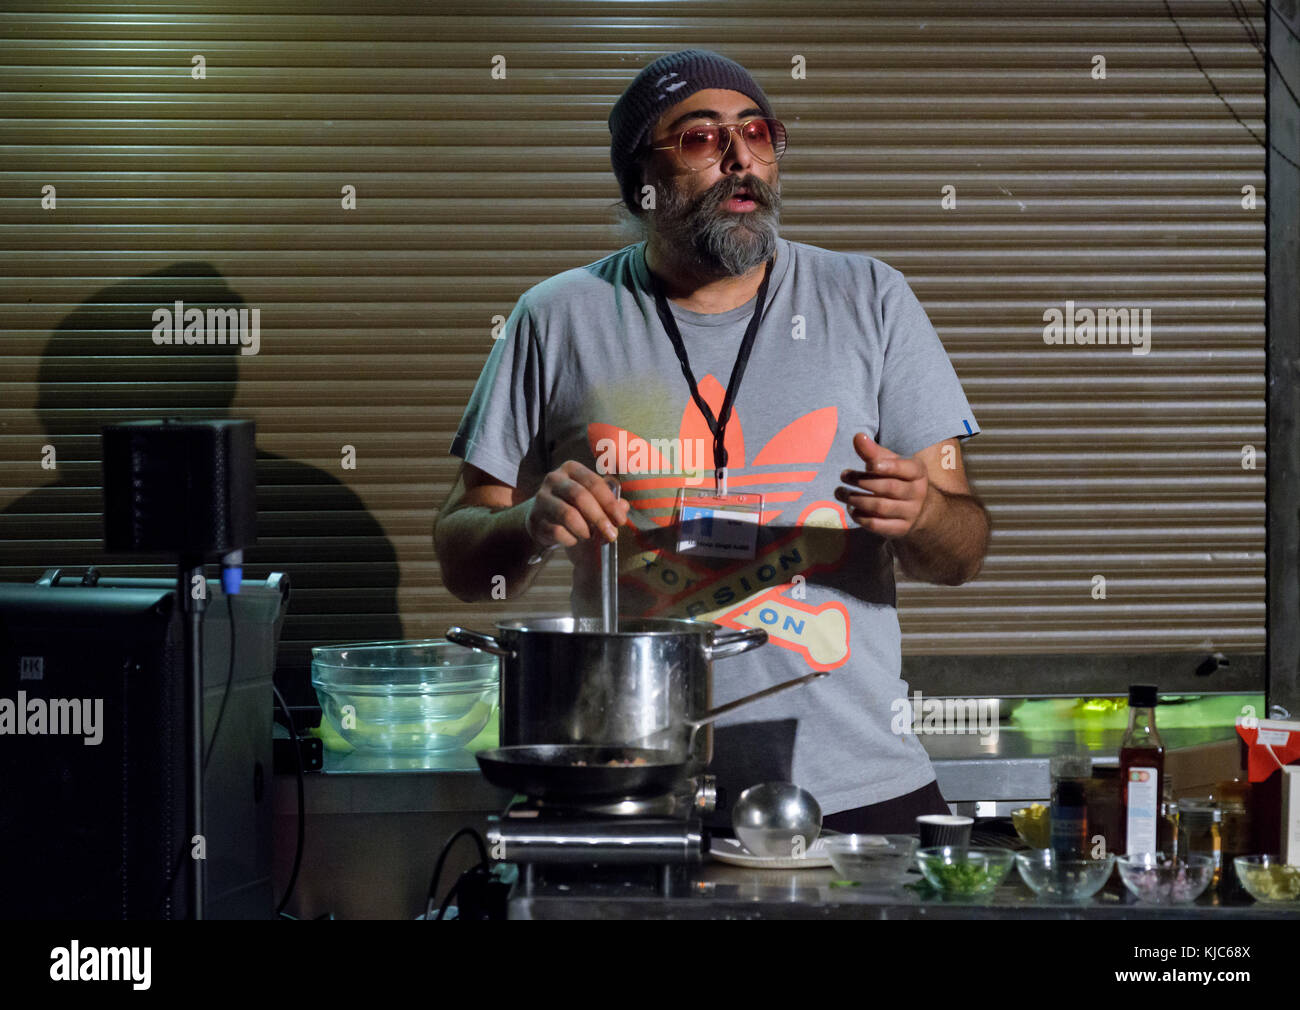 Hardeep Singh Kohli démonstration de cuisine indienne à l'Musicport music festival, Whitby, North Yorkshire, UK, le 22 octobre 2017 Banque D'Images